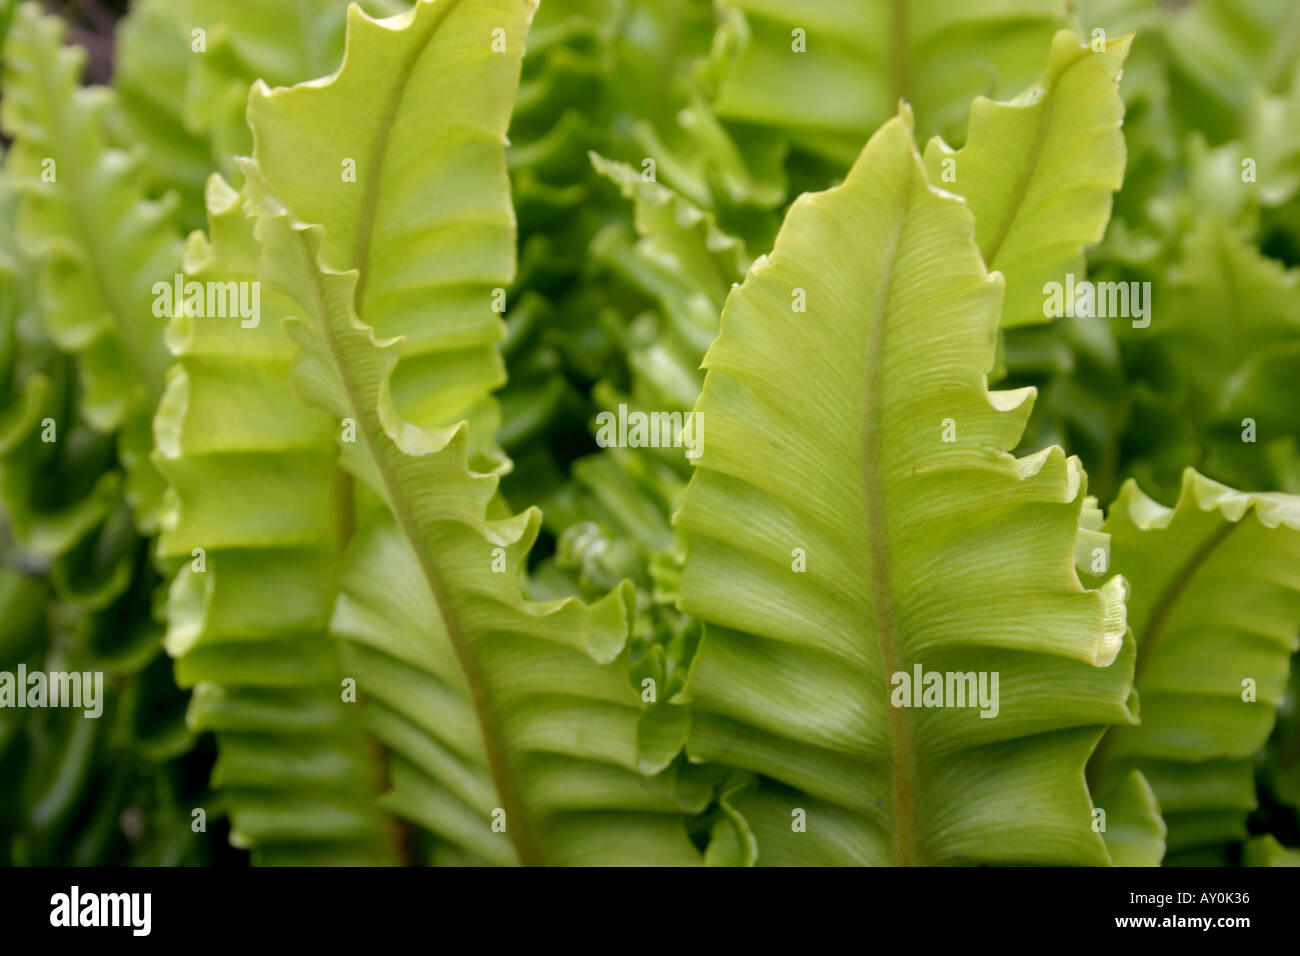 Leaves of Asplenium scolopendrium undulatum or Harts Tongue Fern close up Stock Photo